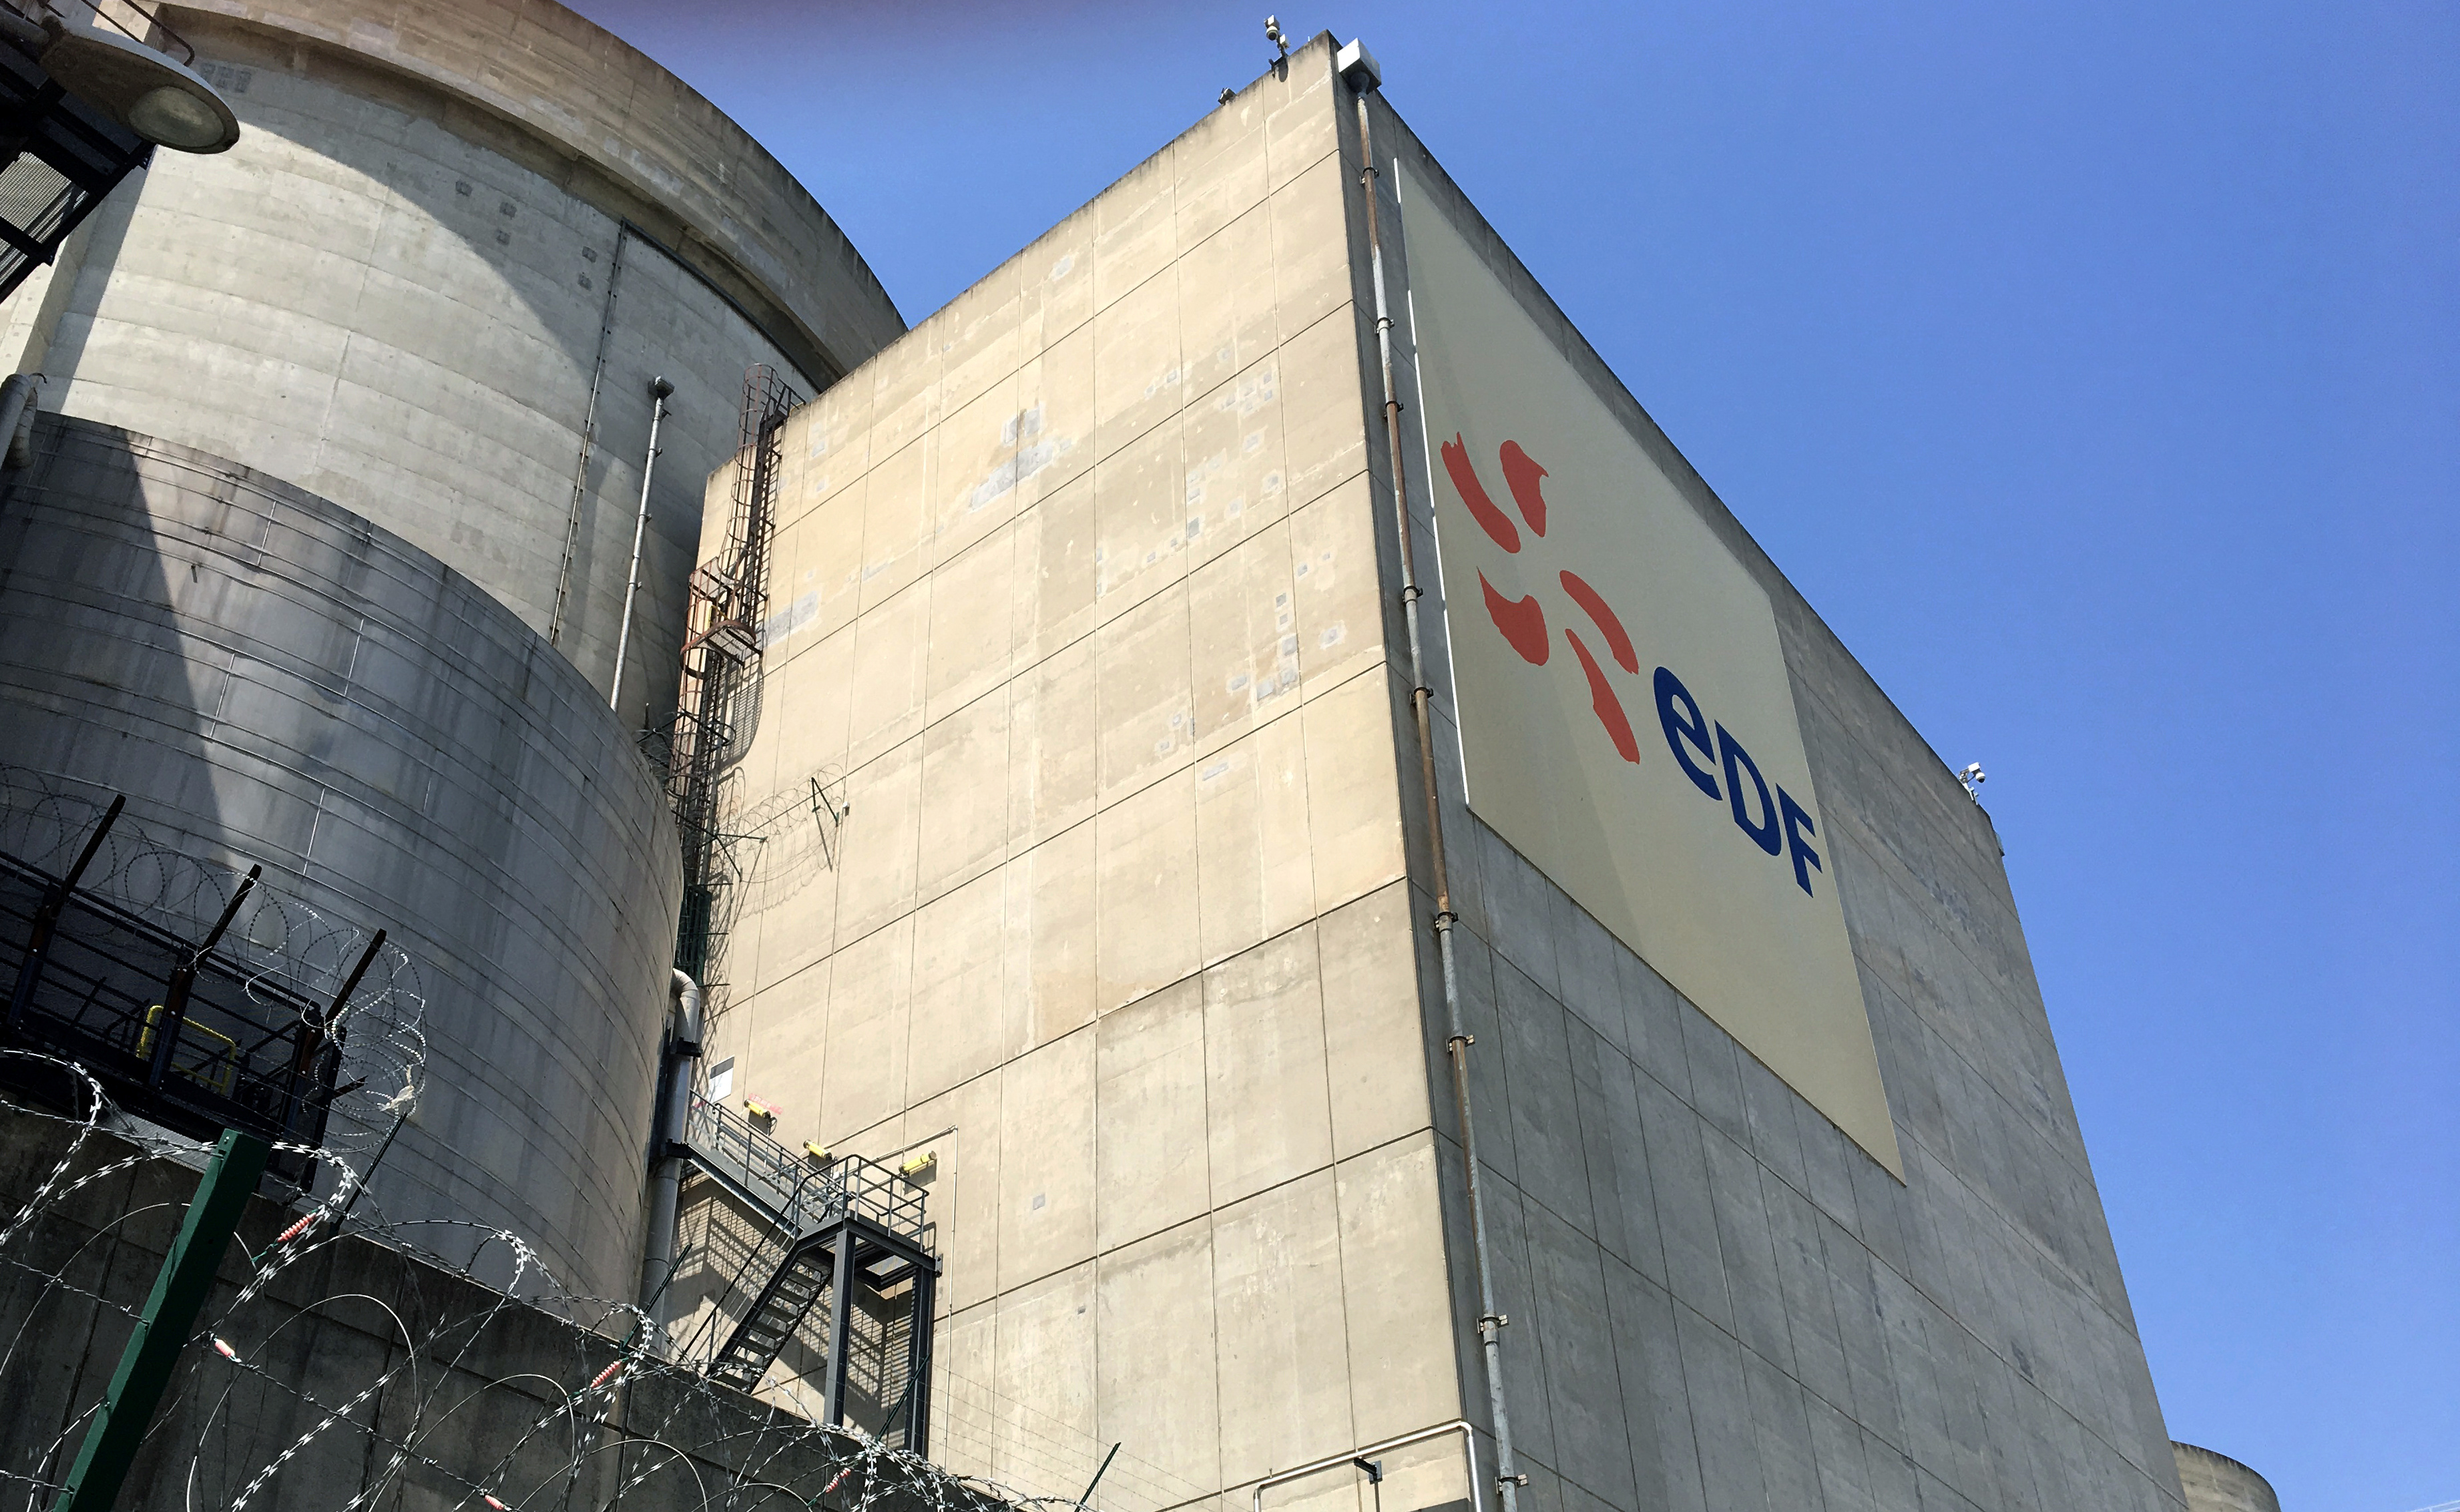 La construction de six nouveaux réacteurs nucléaires de type EPR en France couterait au moins 46 milliards d'euros, d'après les calculs d'EDF. /Photo prise le 27 juin 2019/REUTERS/Benjamin Mallet